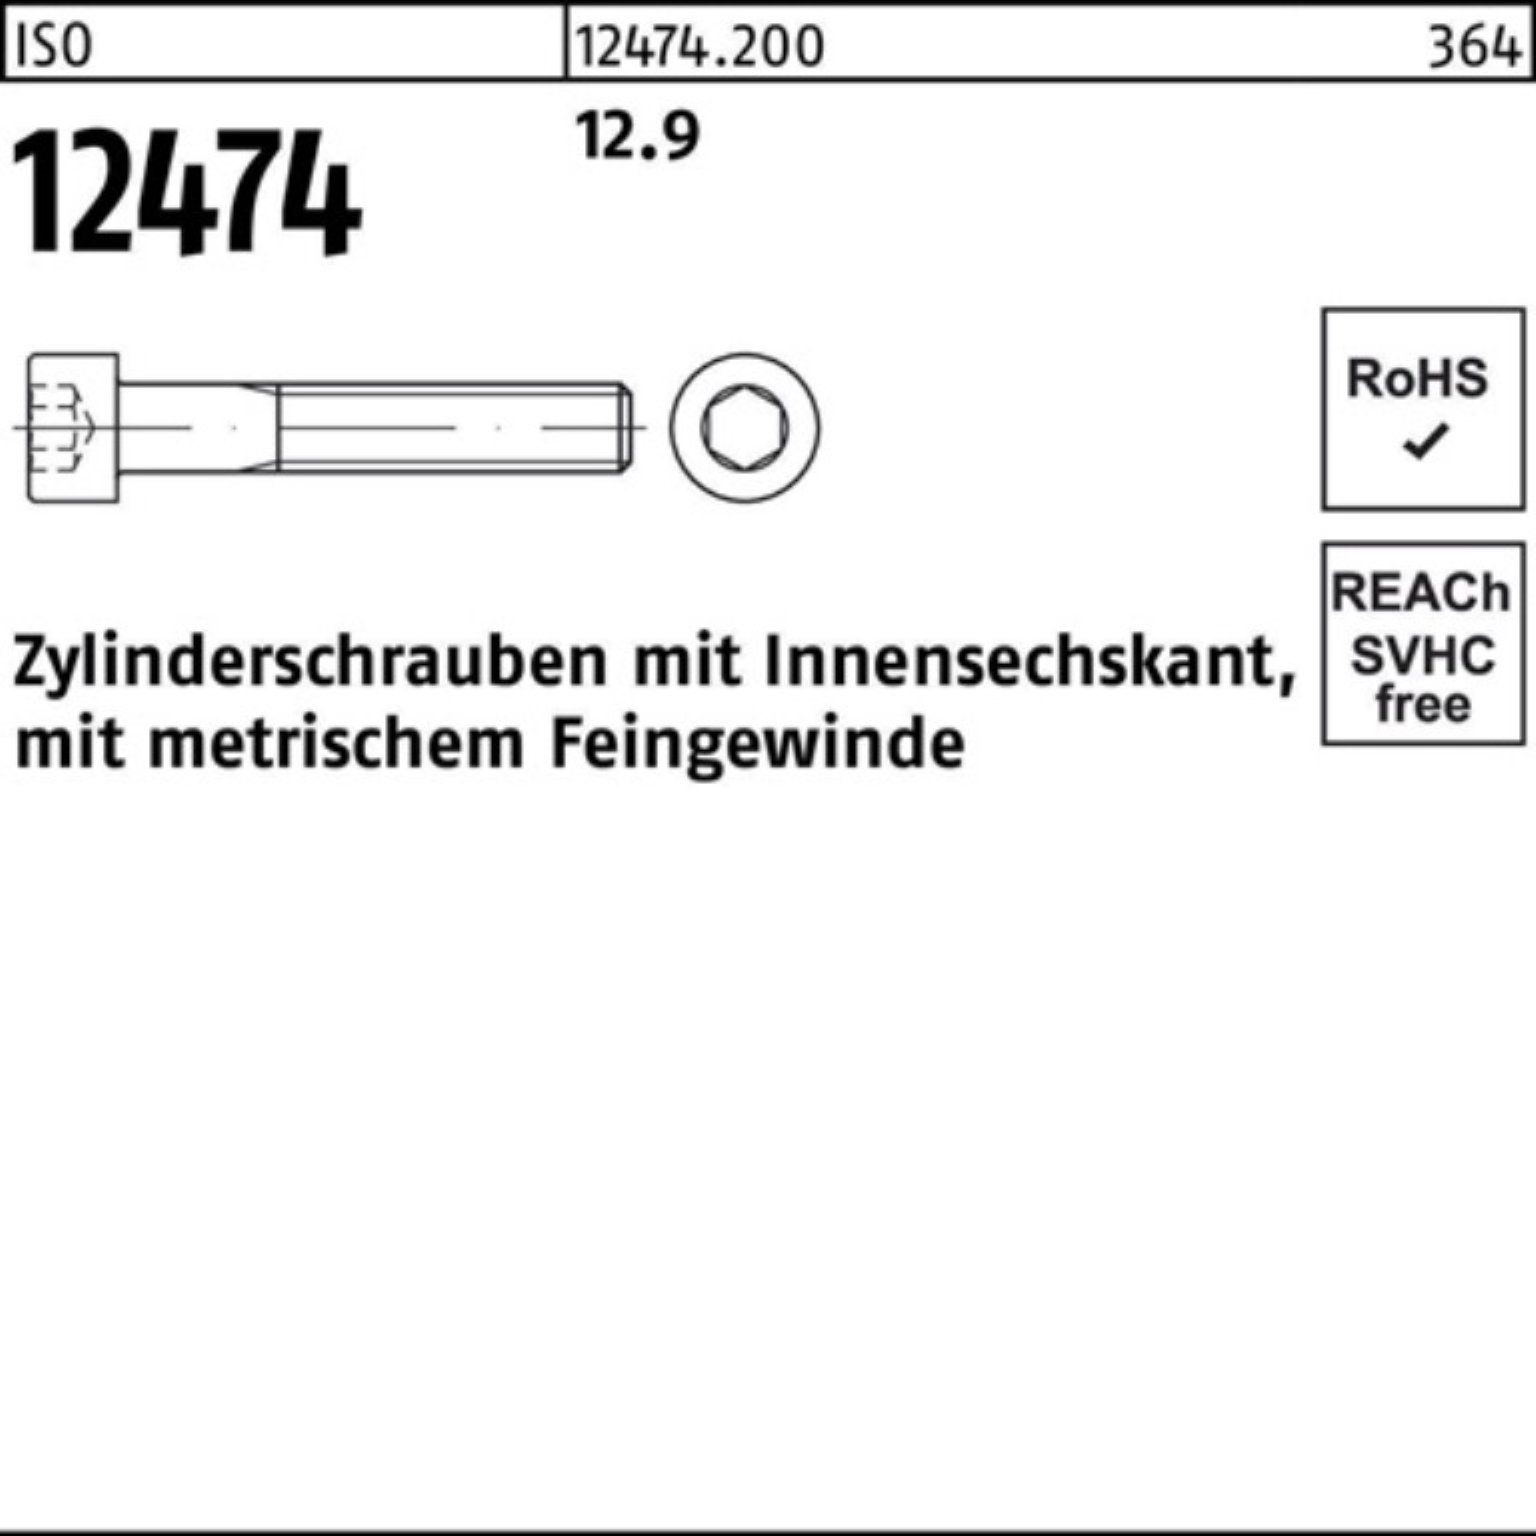 Zylinderschraube Reyher Zylinderschraube St 100er Pack 12.9 12474 100 M10x1x 90 Innen-6kt ISO